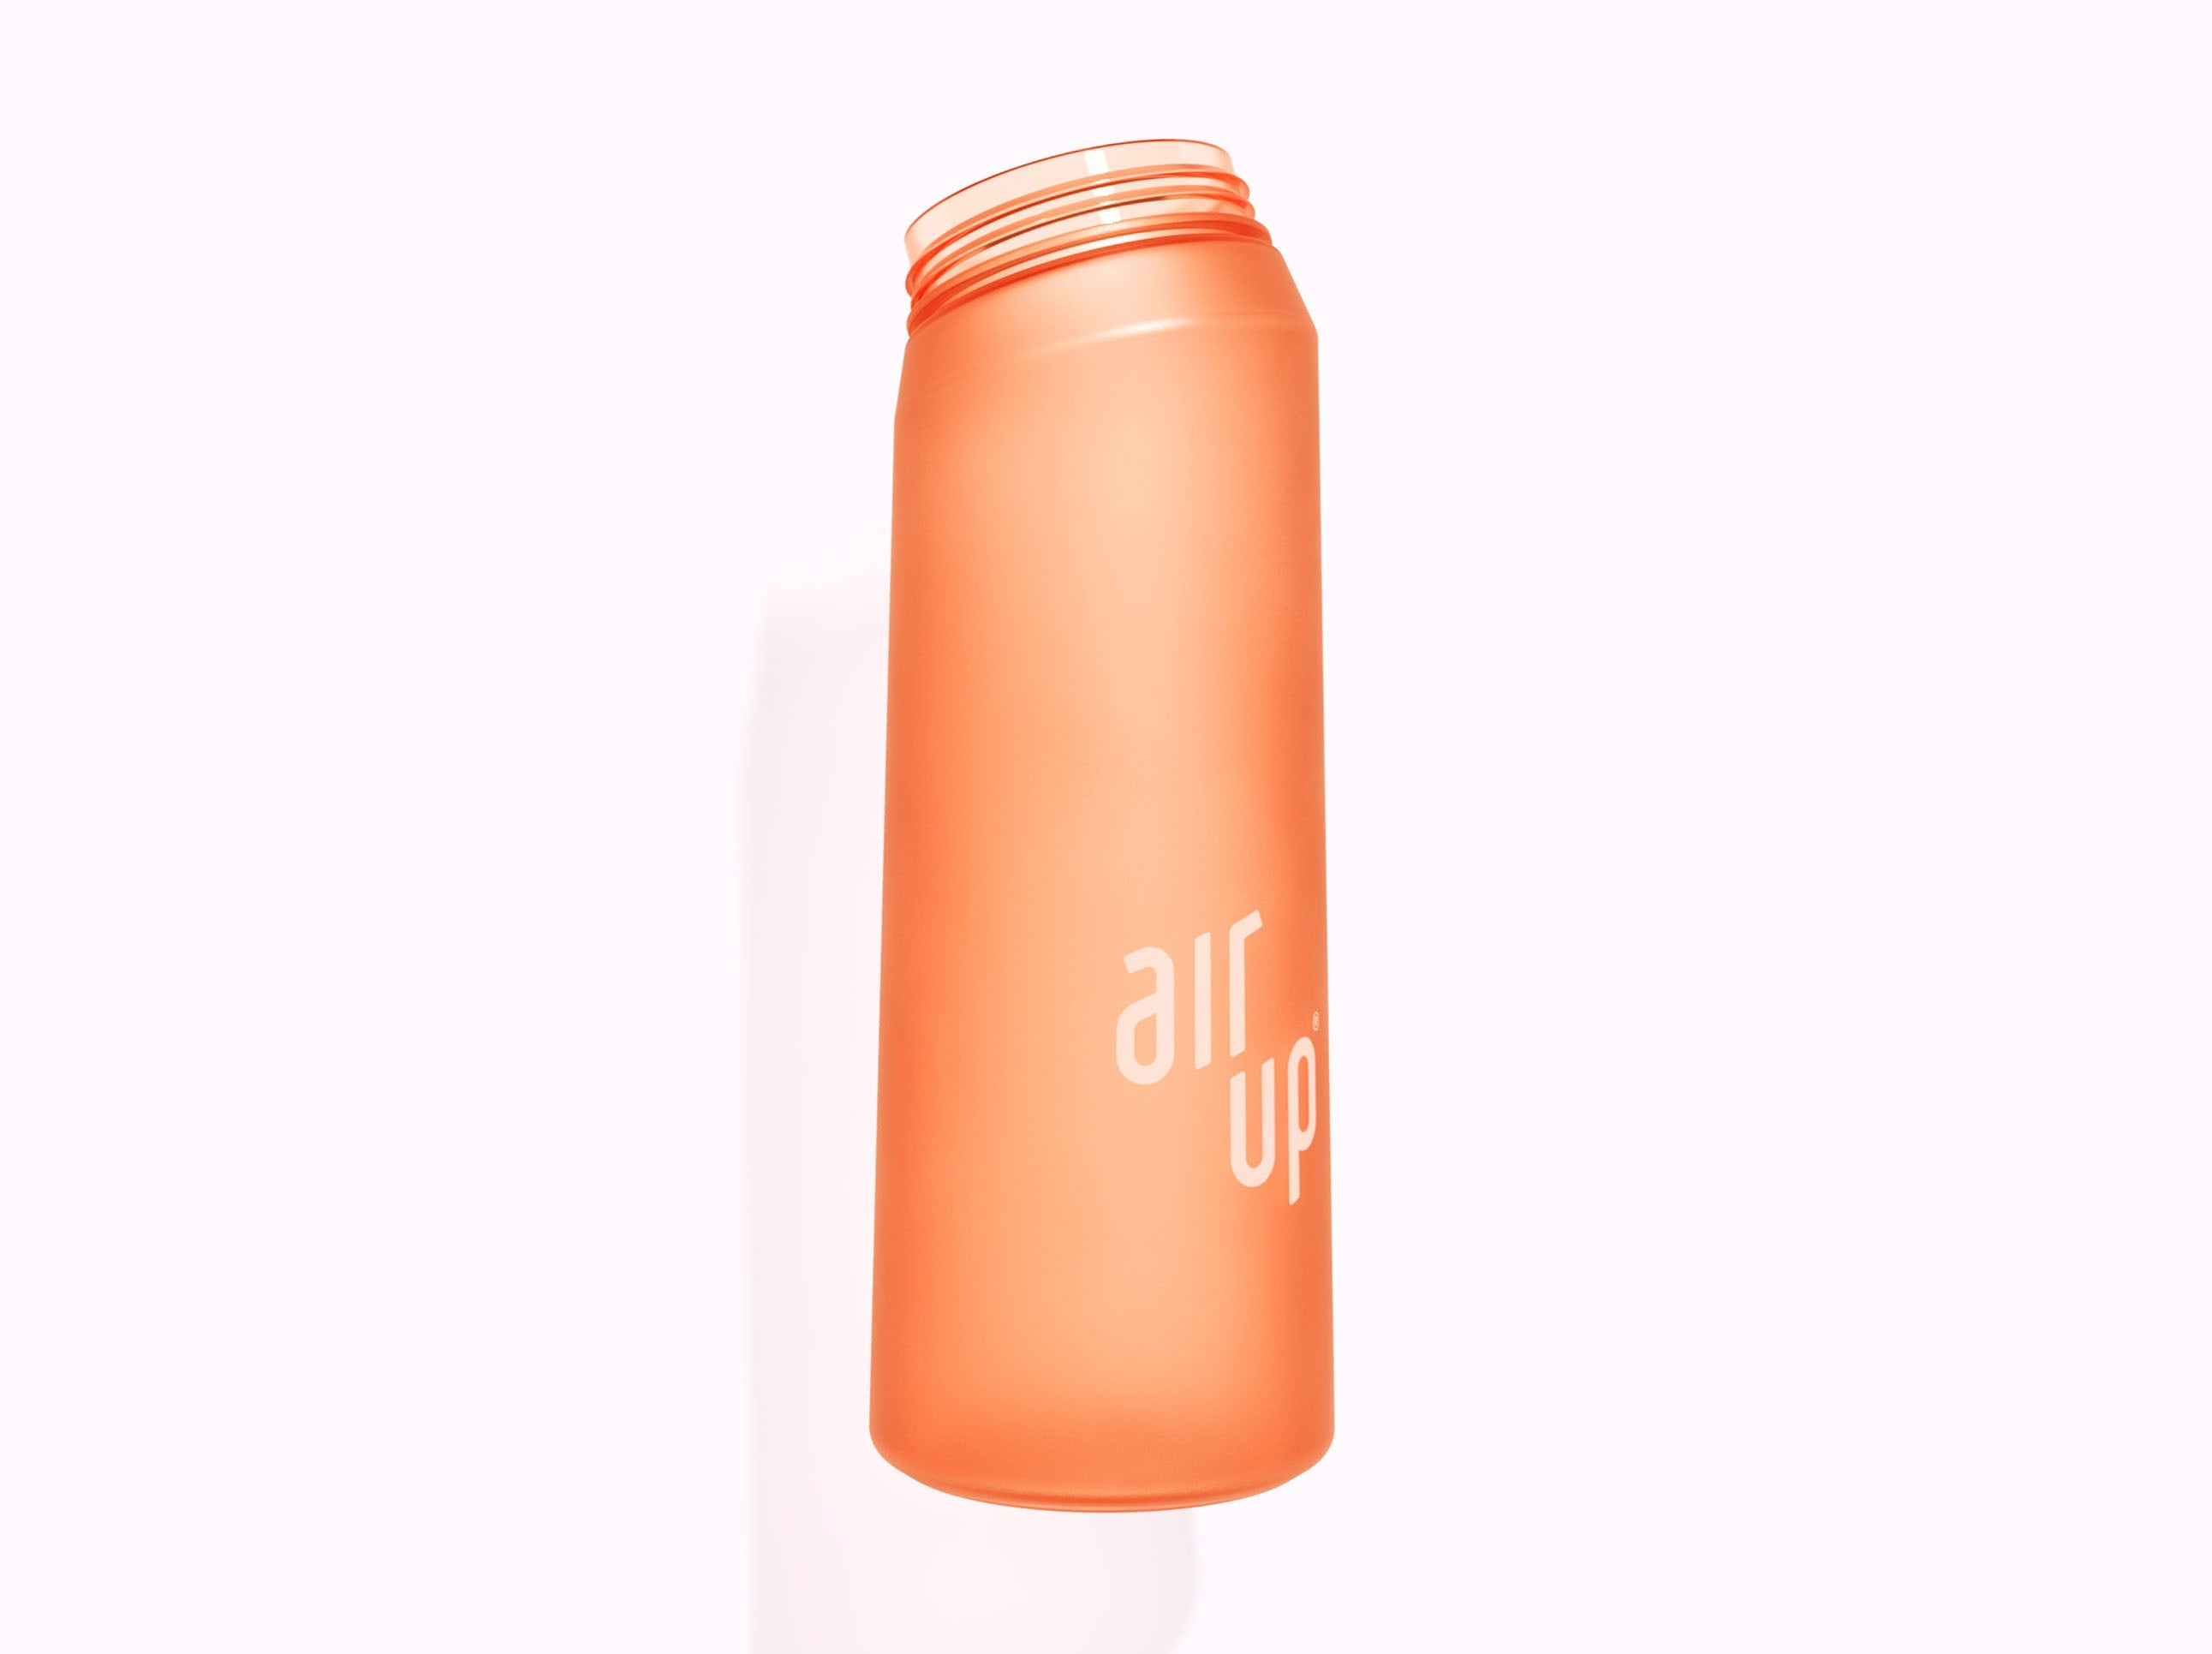 Duft Pod Aufbewahrung für Air Up Flasche inkl. Magnethalterung zu  Befestigung über 60 Farben -  Italia